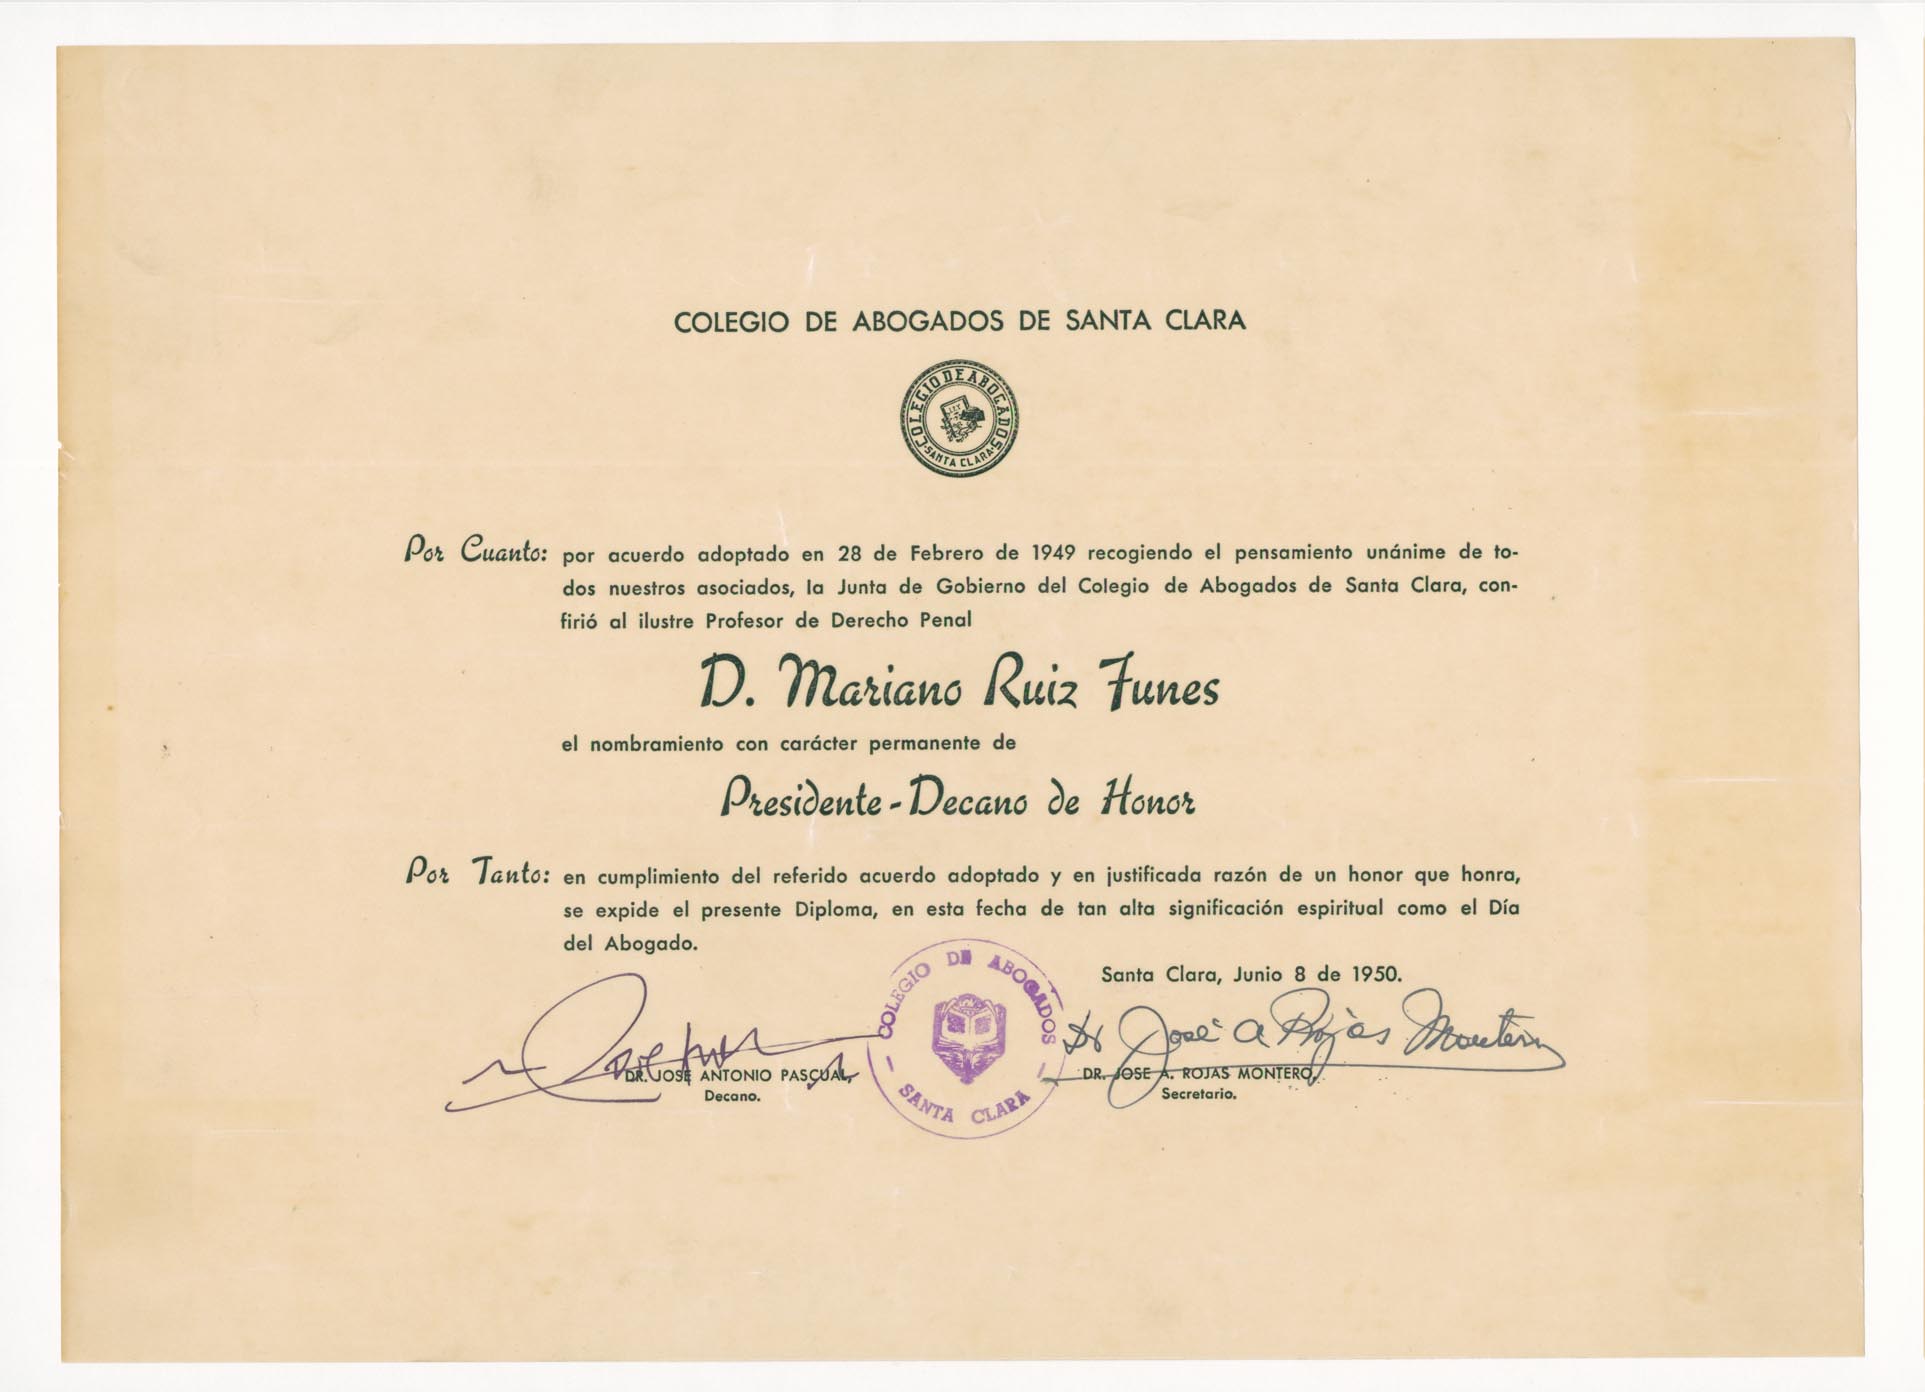 Diploma de nombramiento de Presidente-Decano de Honor concedido a Mariano Ruiz-Funes García por el Colegio de Abogados de Santa Clara.